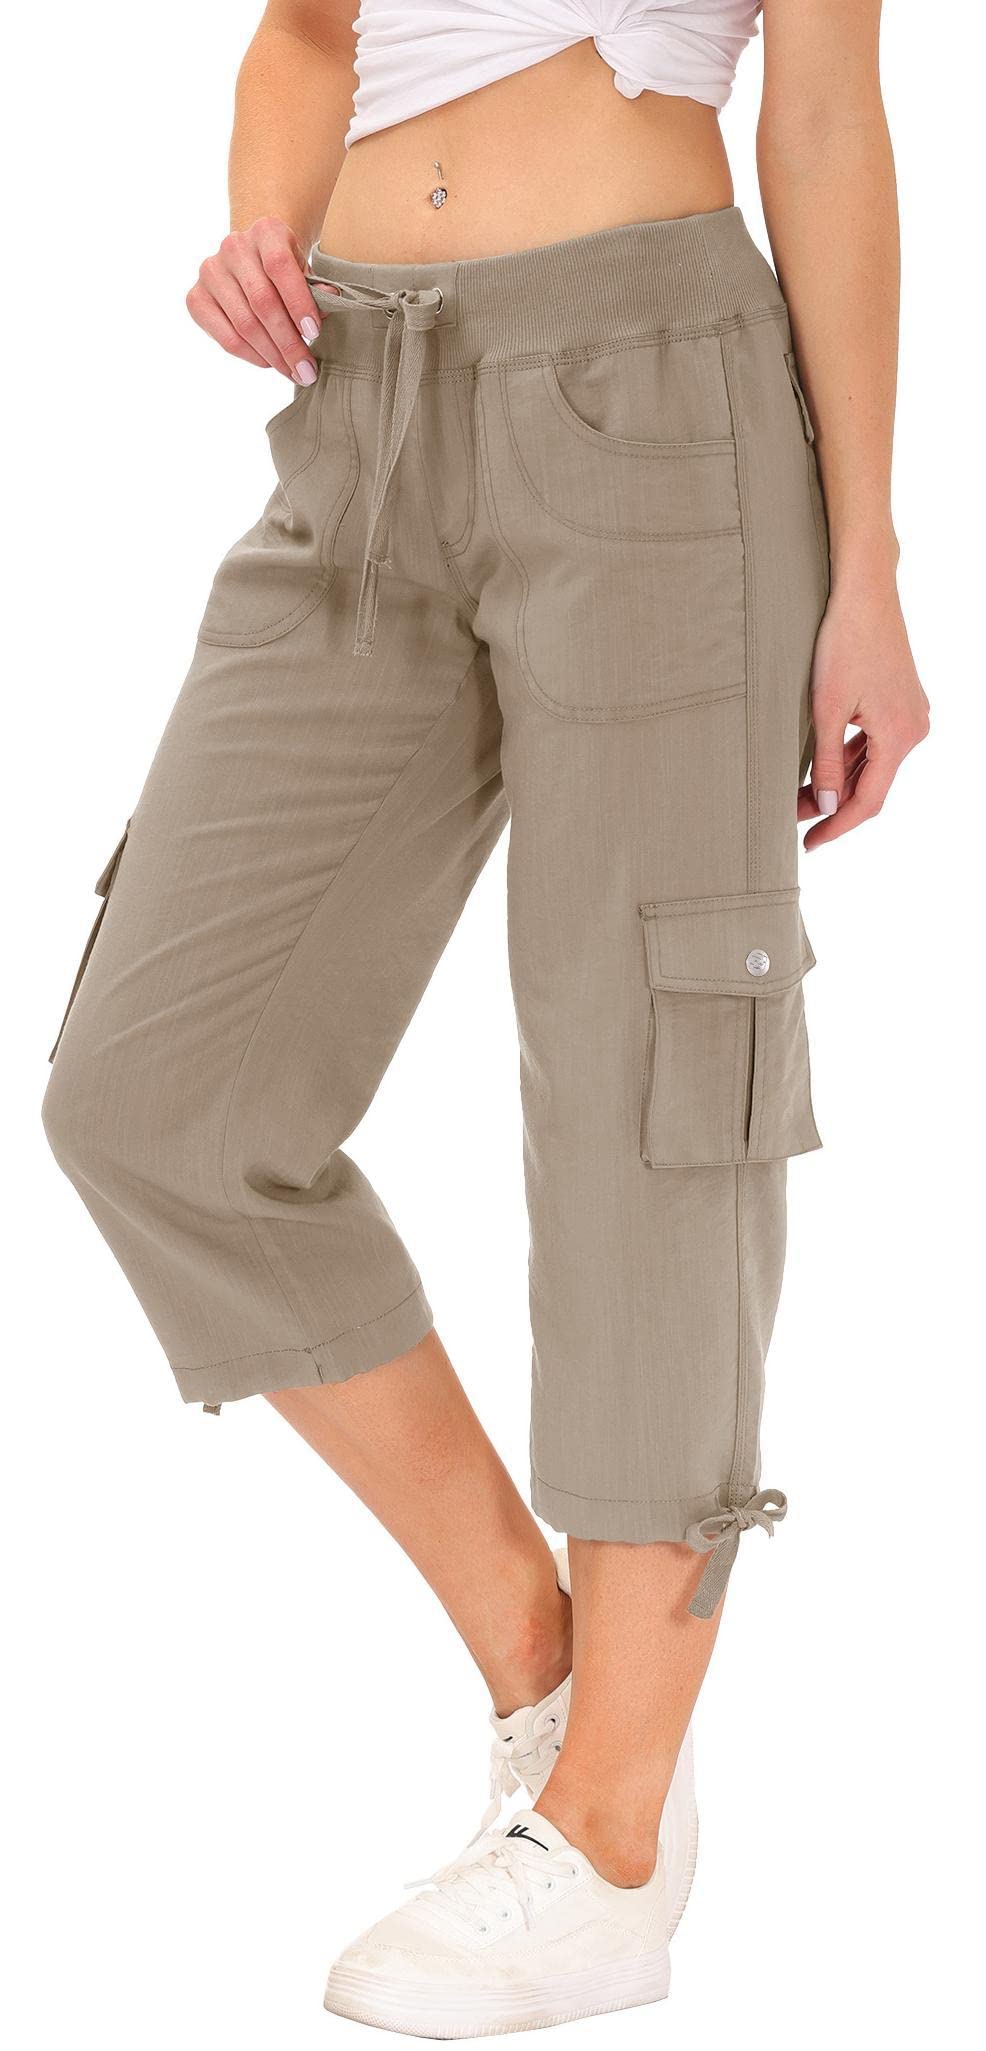 vente chaude AjezMax Pantalons Femme Cargo 3/4 Long Spo